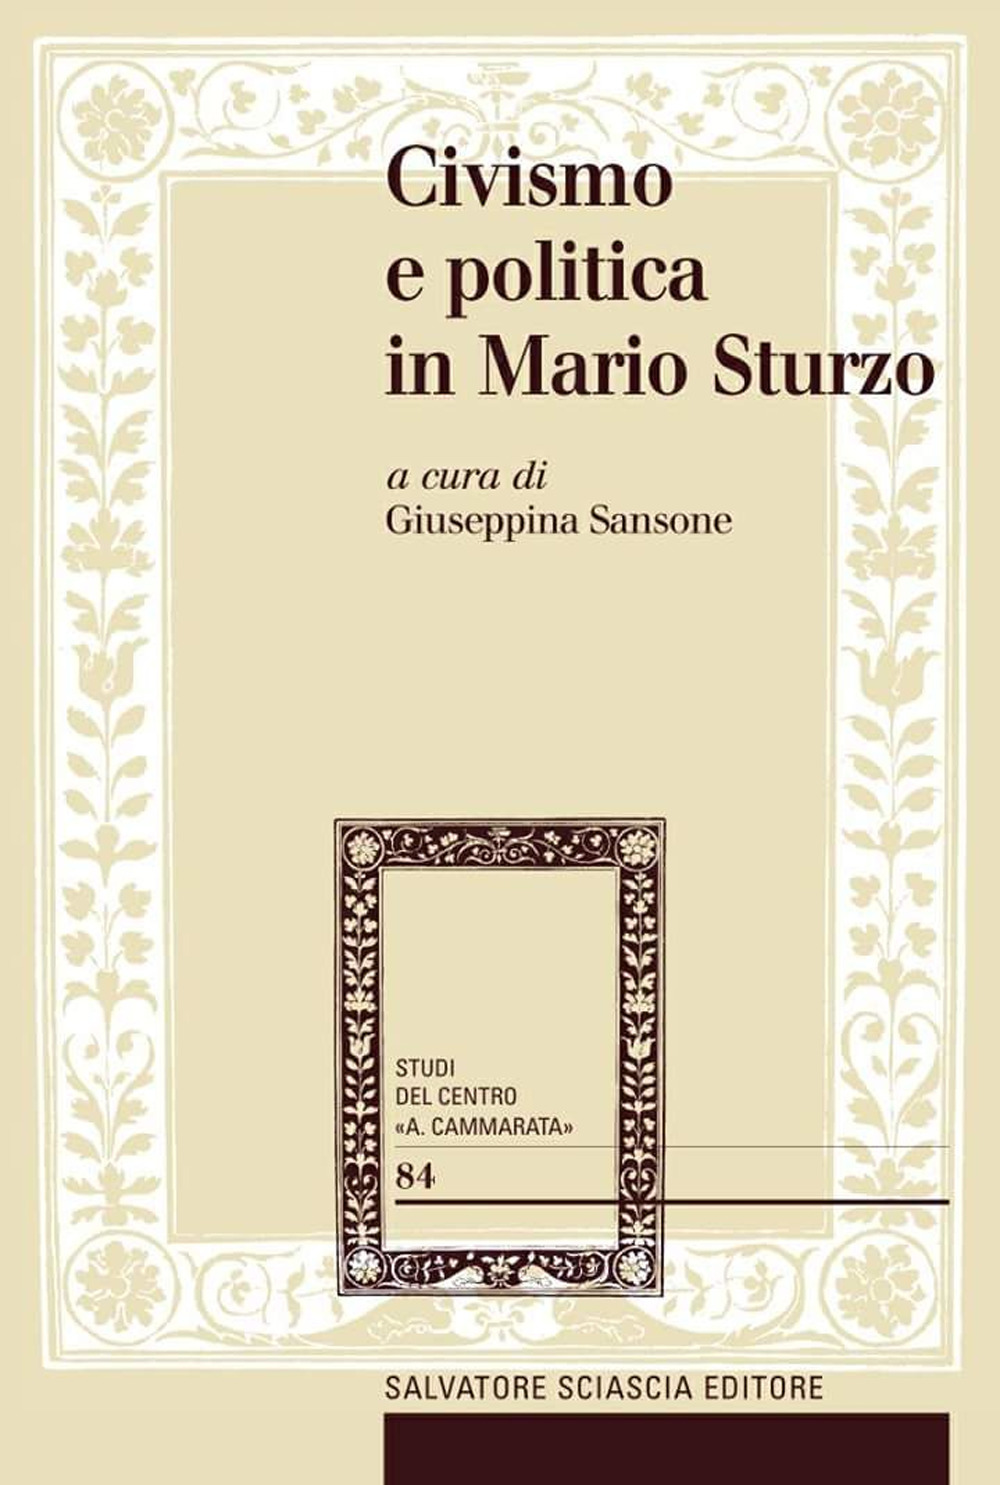 Libri Civismo E Politica In Mario Sturzo NUOVO SIGILLATO, EDIZIONE DEL 20/04/2017 SUBITO DISPONIBILE